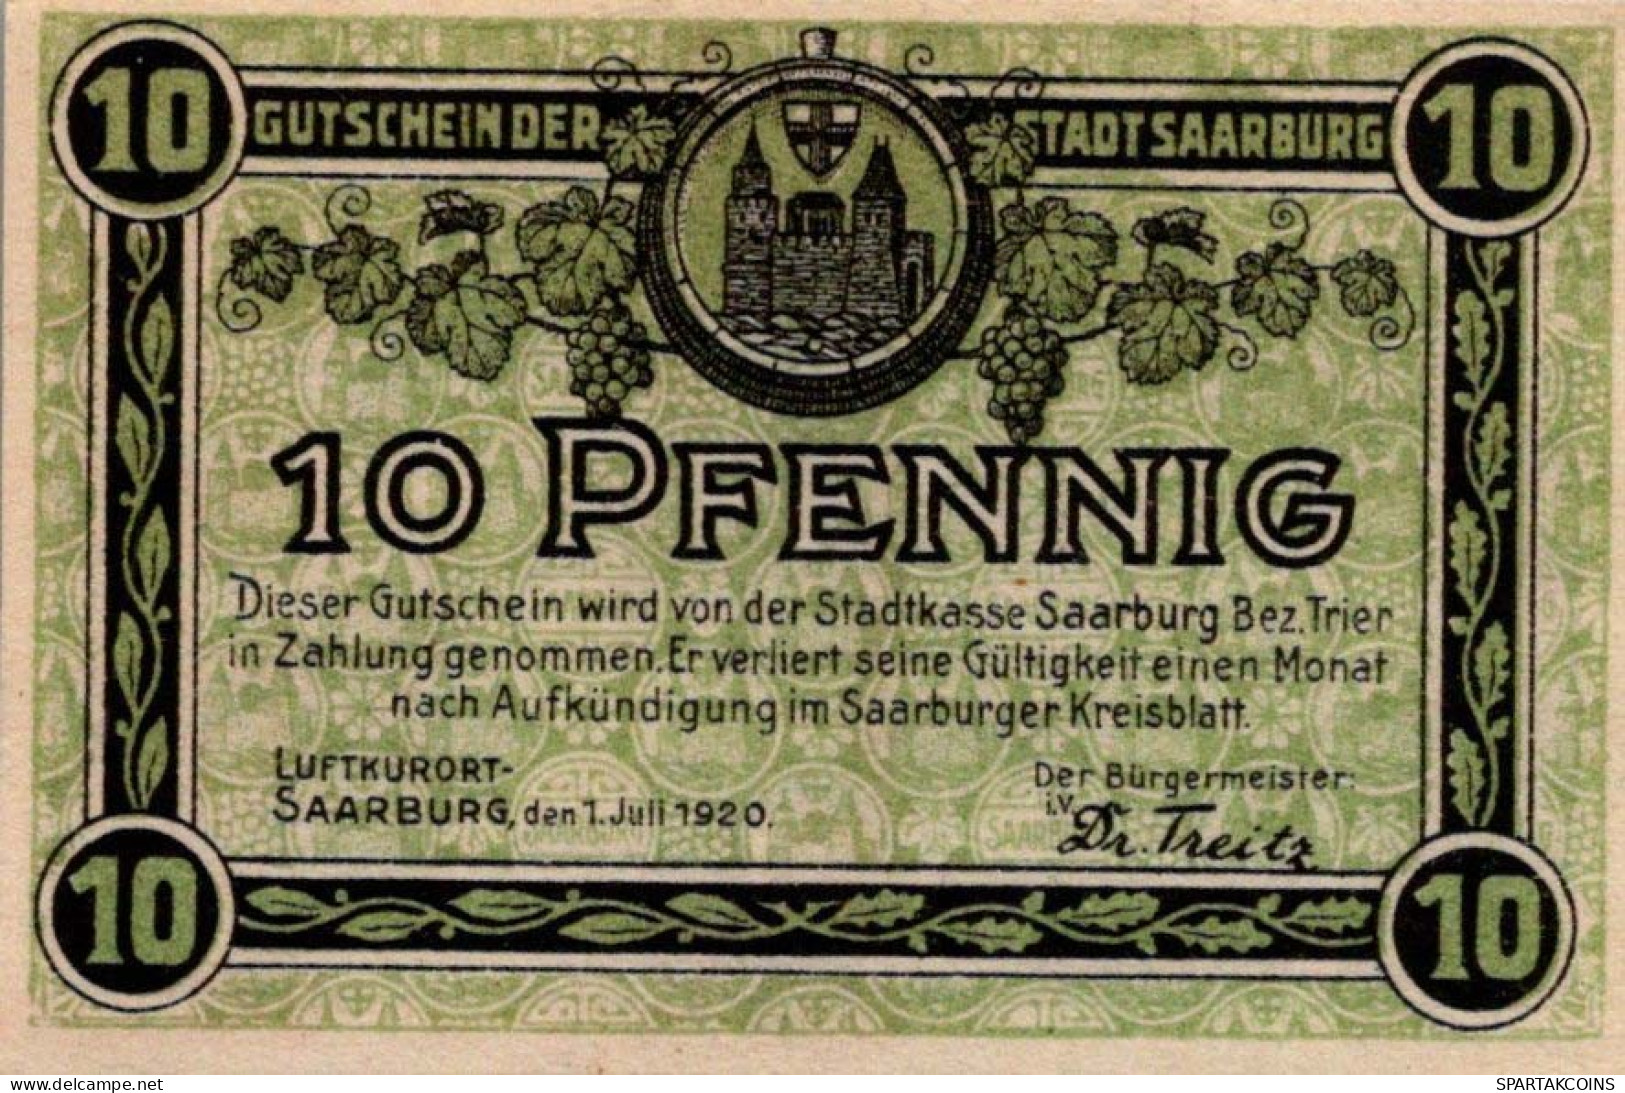 10 PFENNIG 1920 Stadt SAARBURG Rhine UNC DEUTSCHLAND Notgeld Banknote #PJ056 - [11] Local Banknote Issues